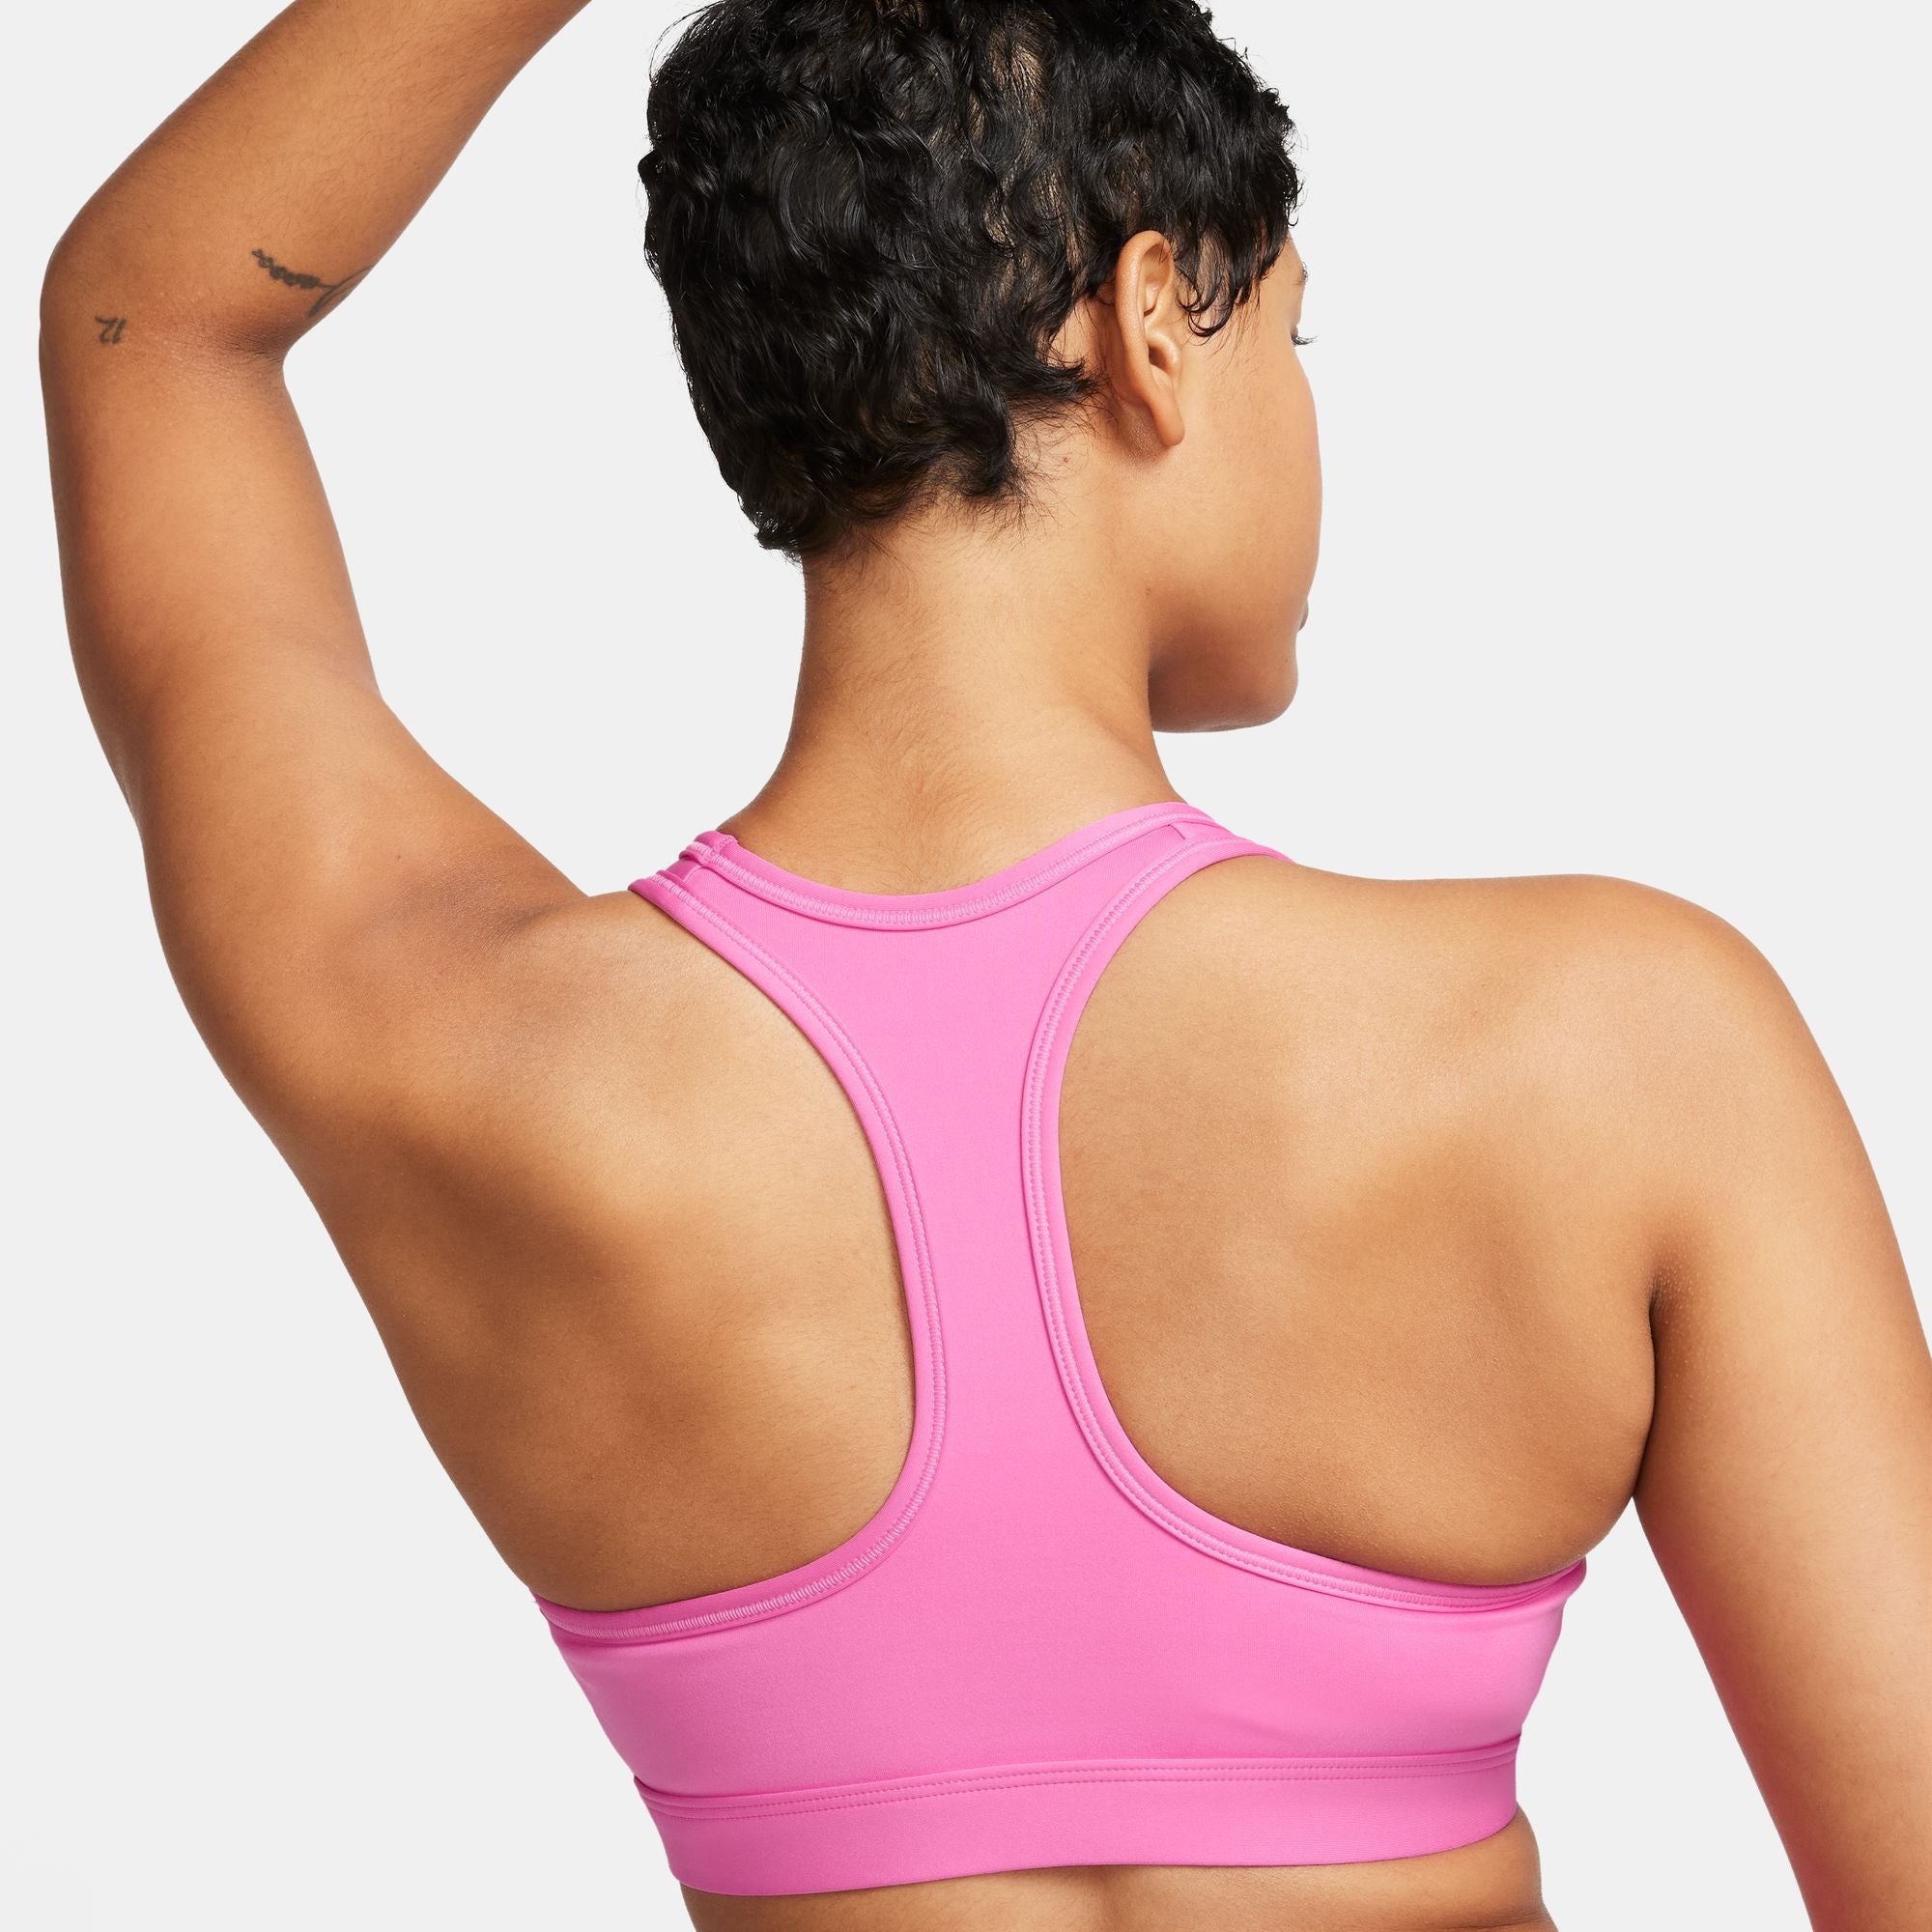 Nike pink sports bra no padding size small